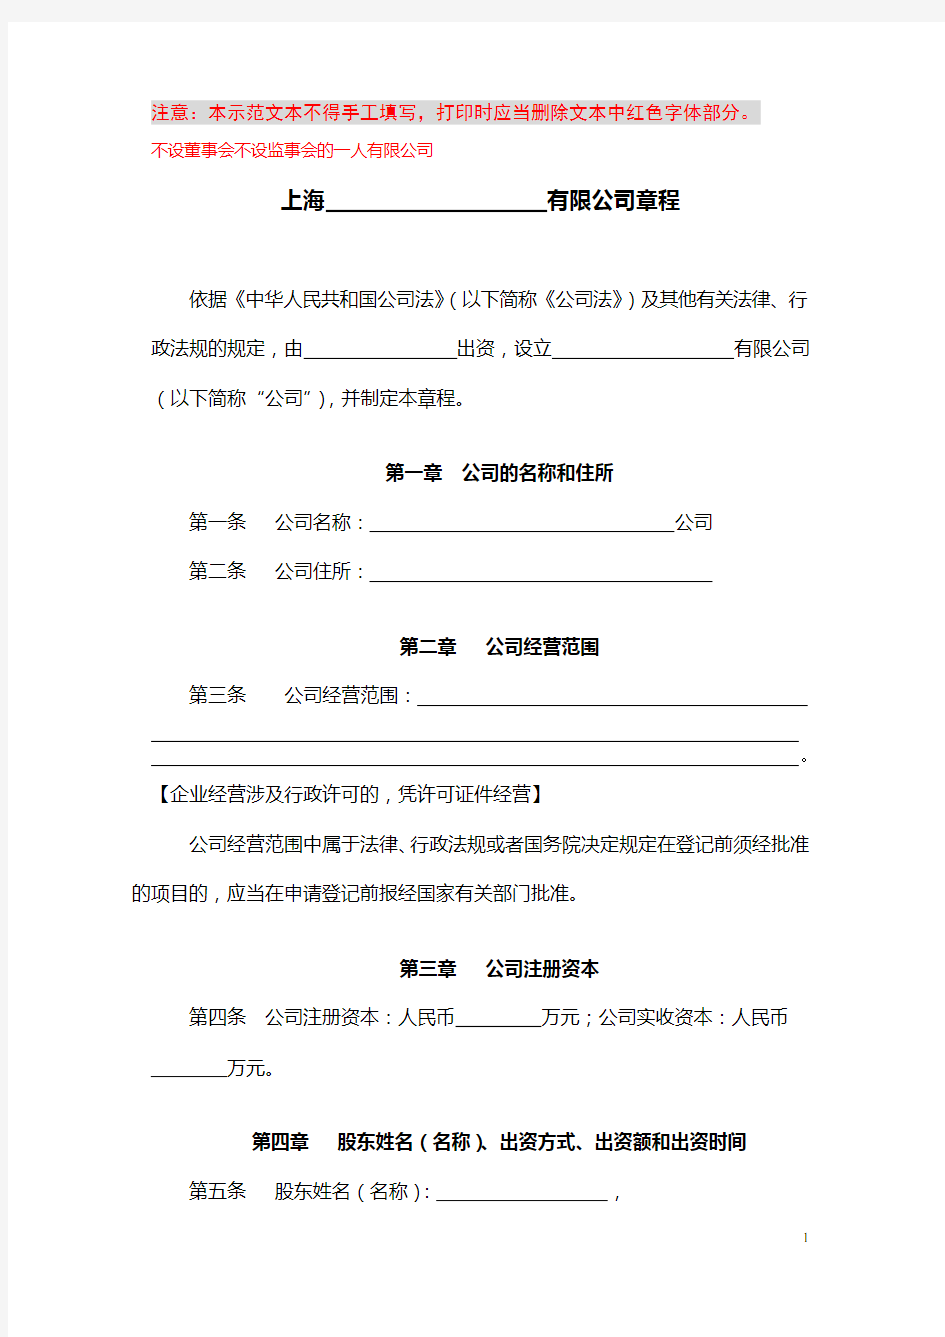 (完整版)一人有限公司开业示范文本-公司章程(上海工商局制定)